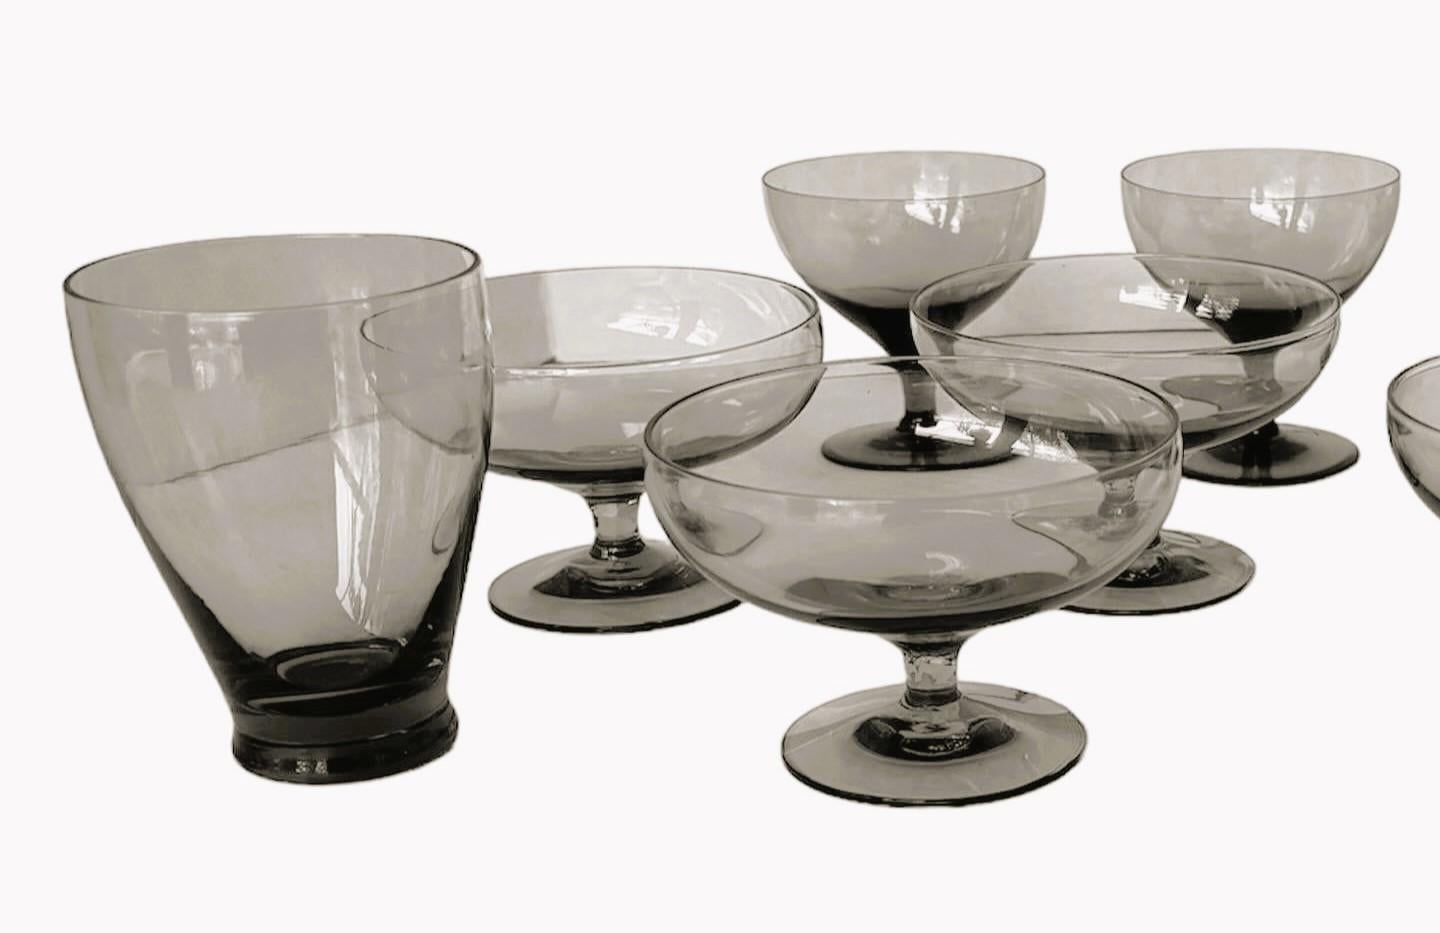 Eine Gruppe von 12 amerikanischen modernen Gläsern aus der Mitte des Jahrhunderts, entworfen von Russel Wright und hergestellt von Morgantown. Bestehend aus 12 Granite Gray - 2 Saftgläser, 6 Dessert/Champagner und 4 Weinkelche alle in sehr gutem